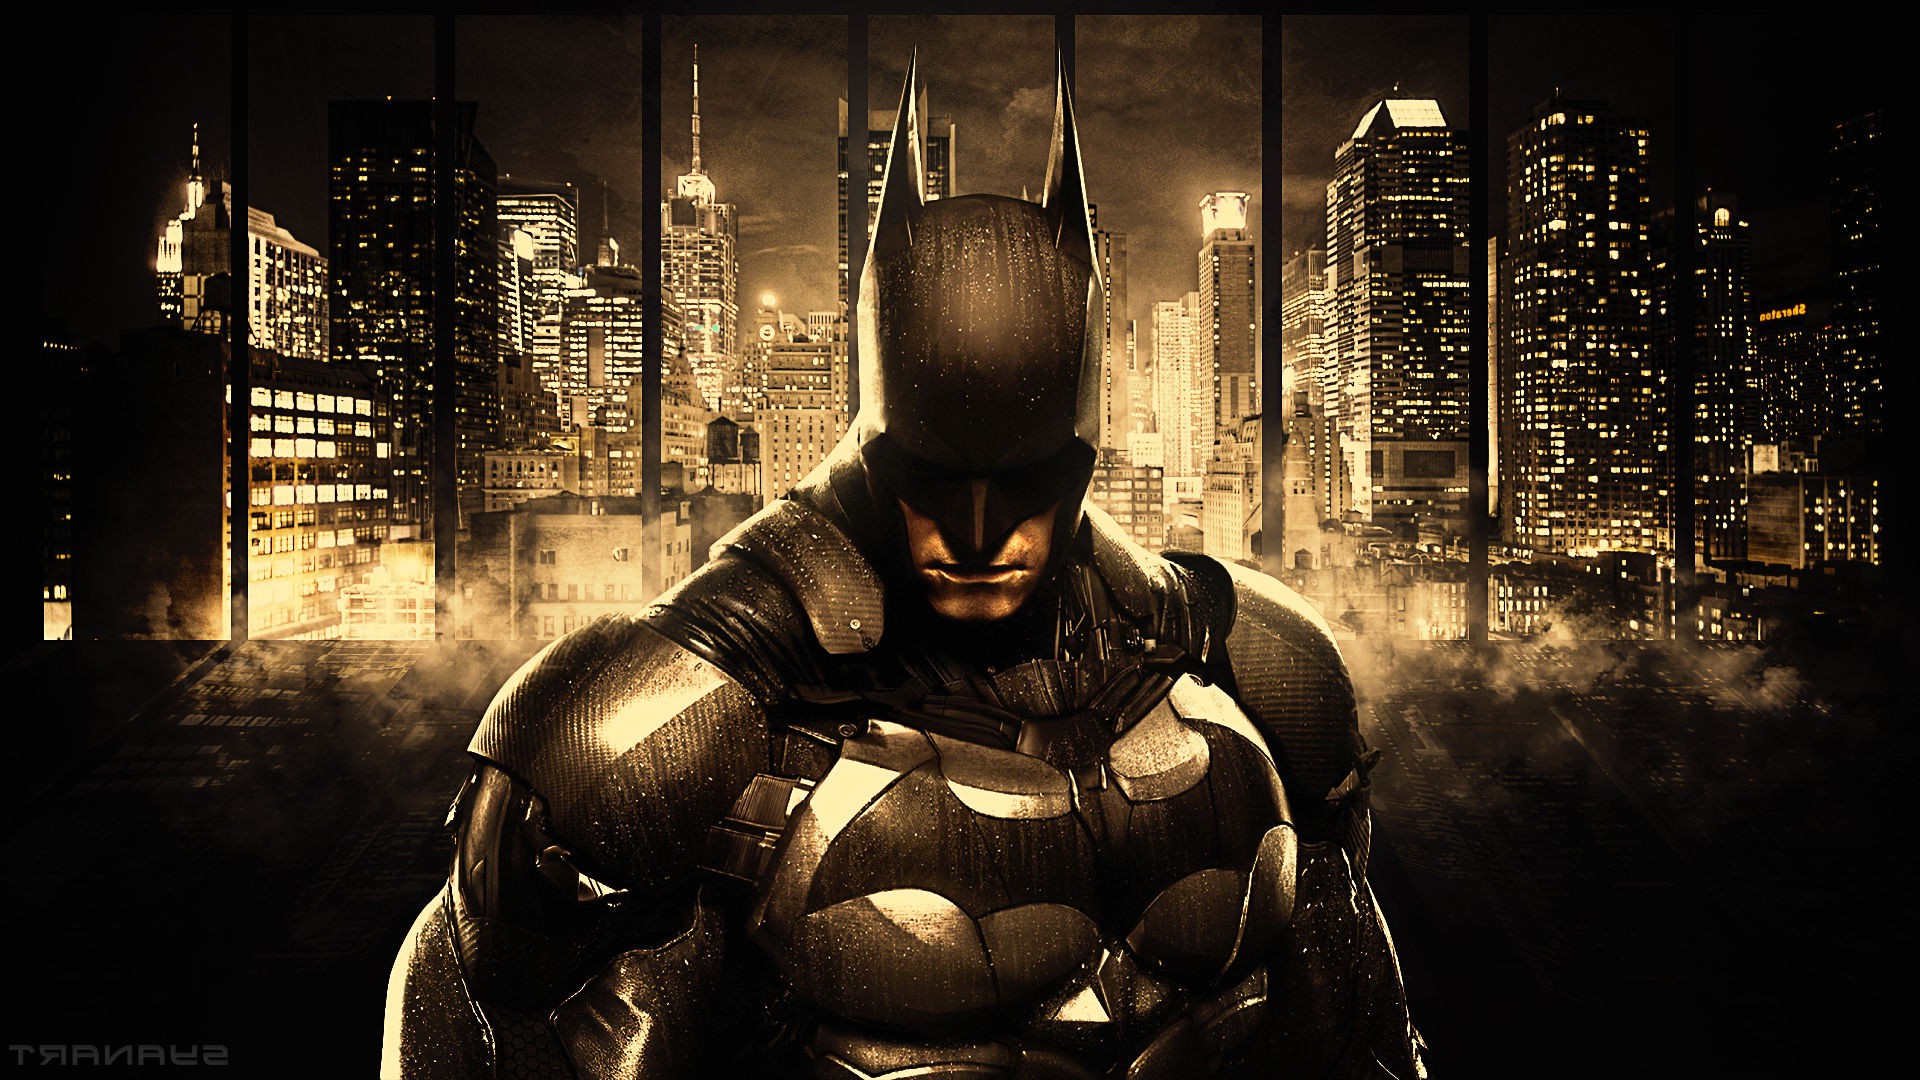 Batman, Comics, DC Comics, Concept Art, Gotham City, Gotham, Cityscape, Skyscraper, Batman: Arkham Knight Wallpaper